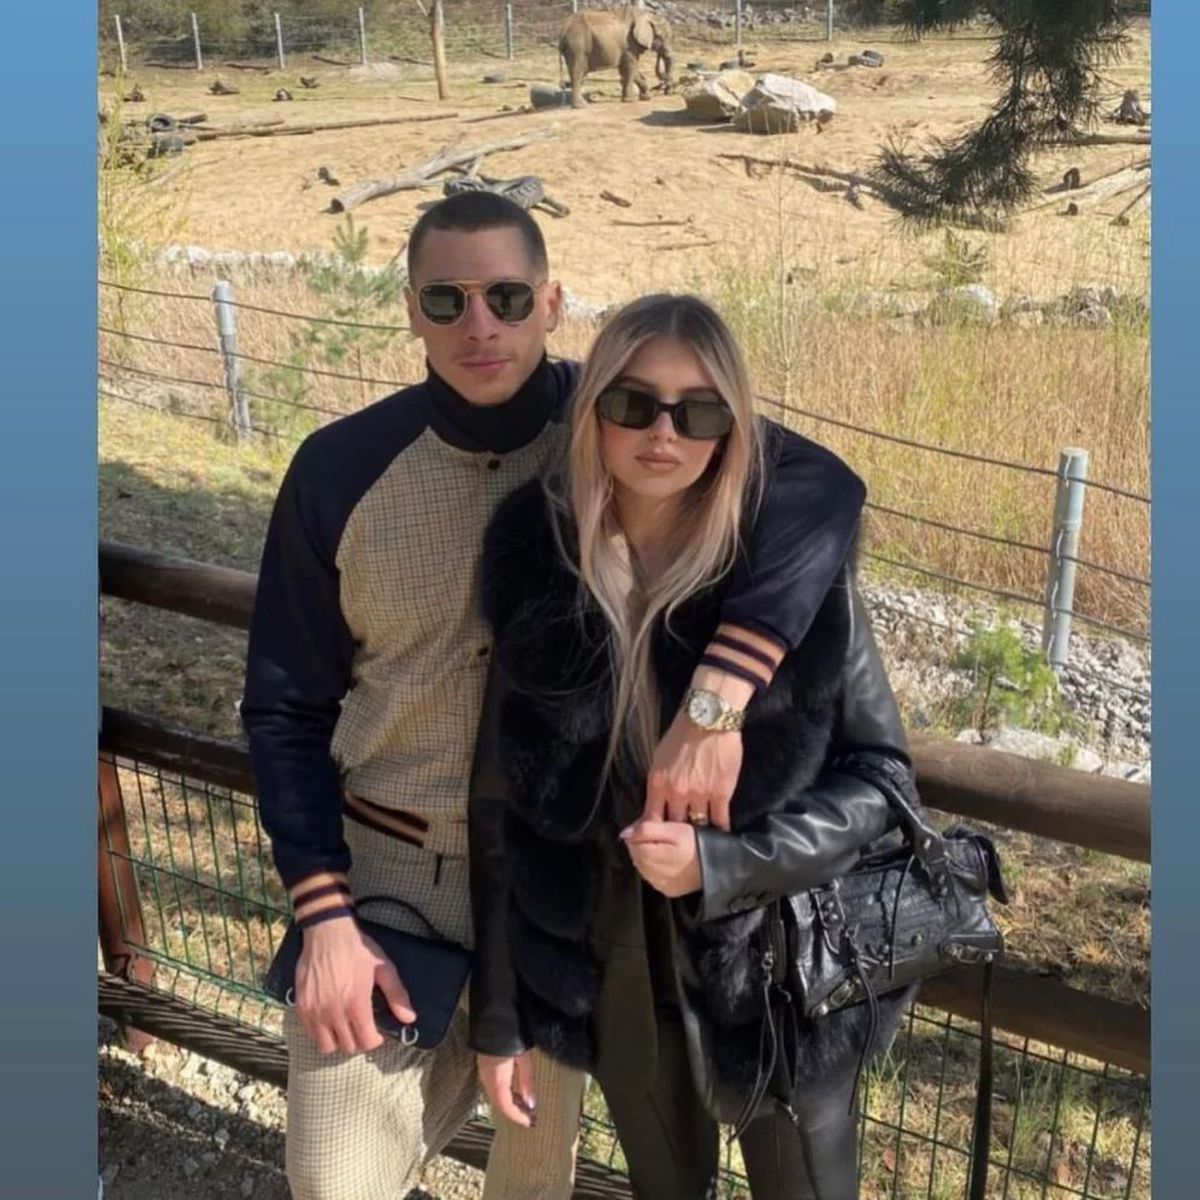 Cine este surpriza pregătită de Edi Iordănescu pentru amicalele din această lună » Soție franțuzoaică, are dublă cetățenie si e pasionat de golf